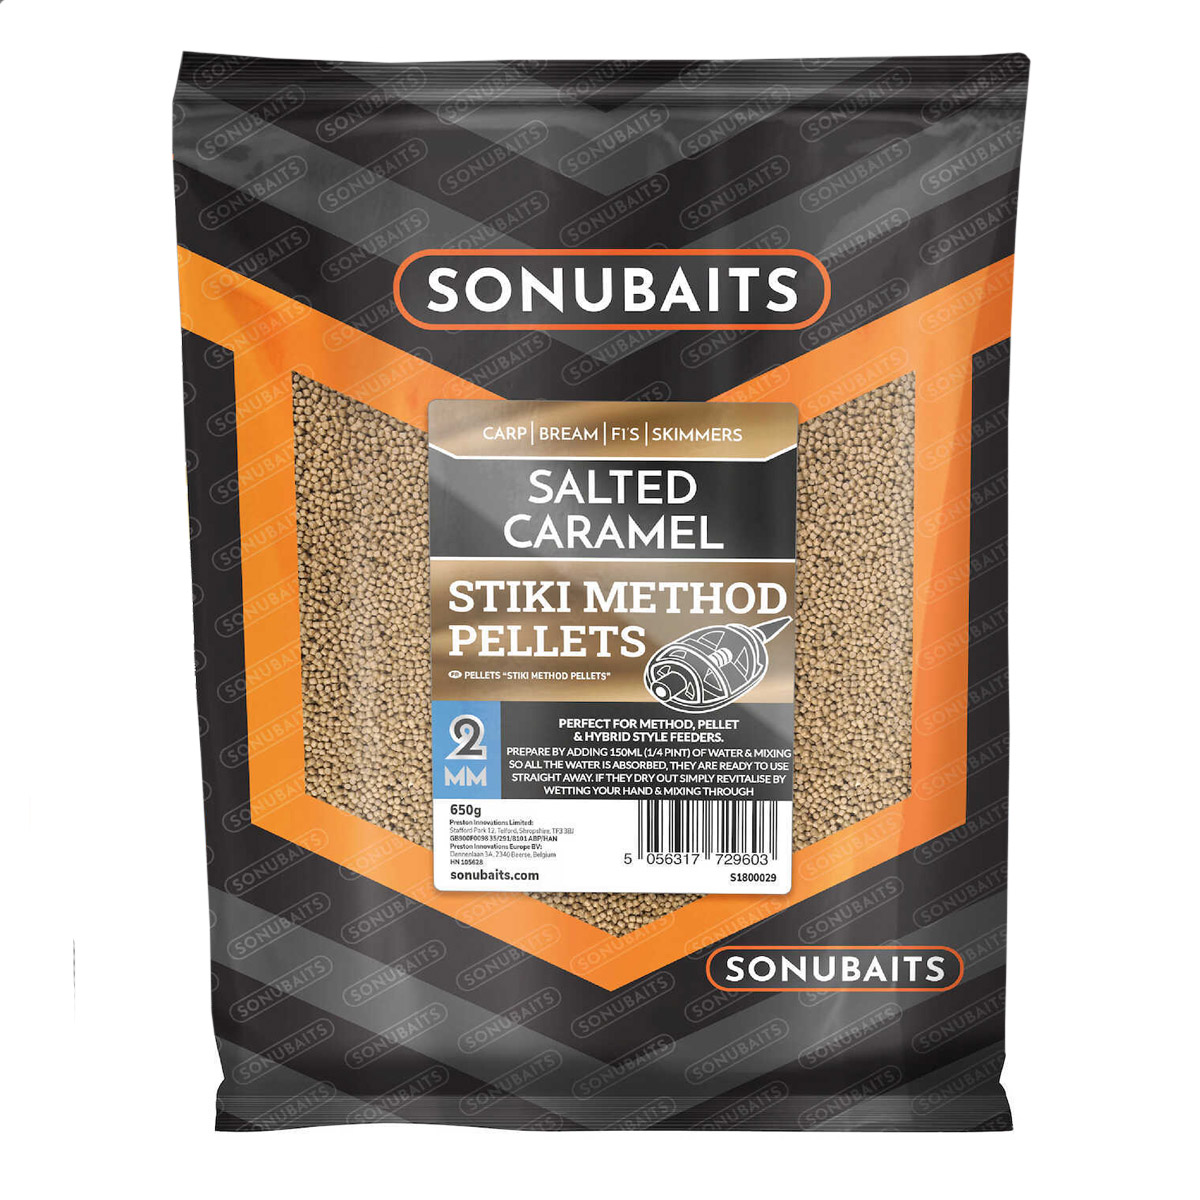 Sonubaits Stiki Salted Caramel Method Pellets